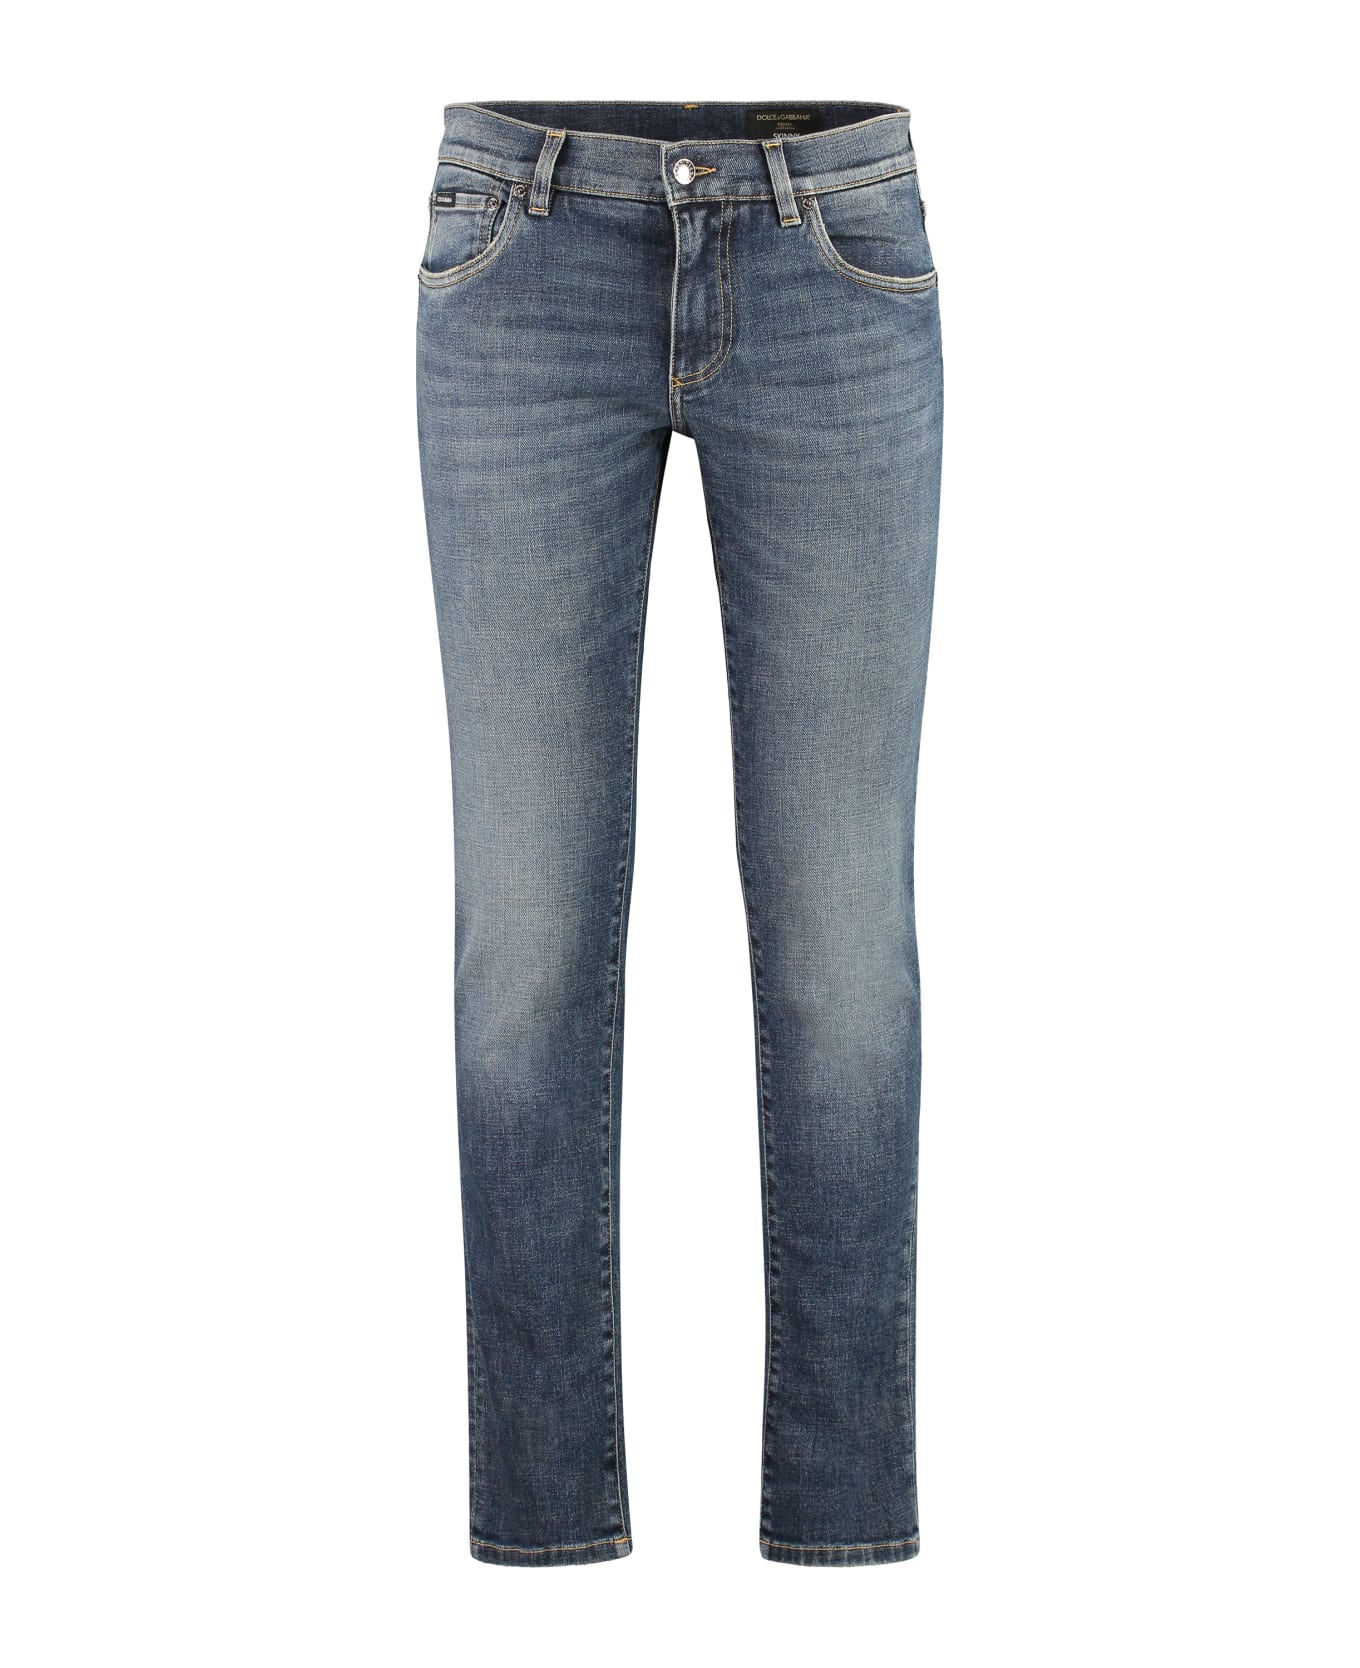 Dolce & Gabbana Stretch Skinny Jeans - Variante abbinata